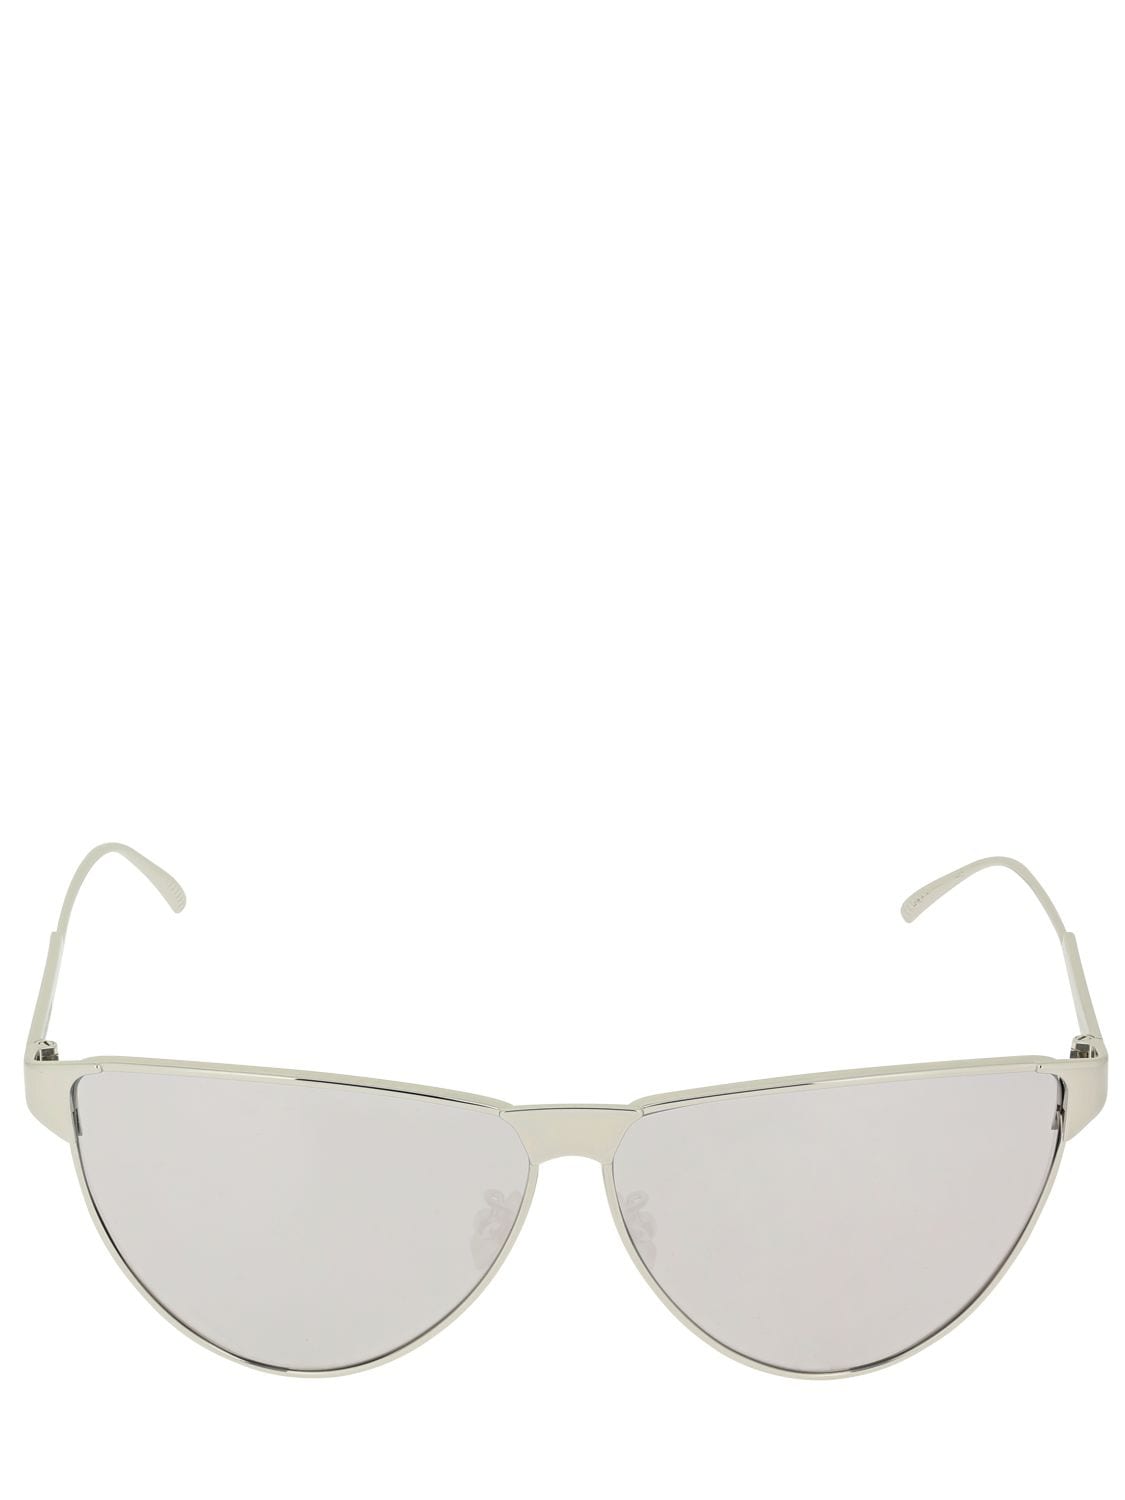 Bv1070s Mirrored Aviator Sunglasses